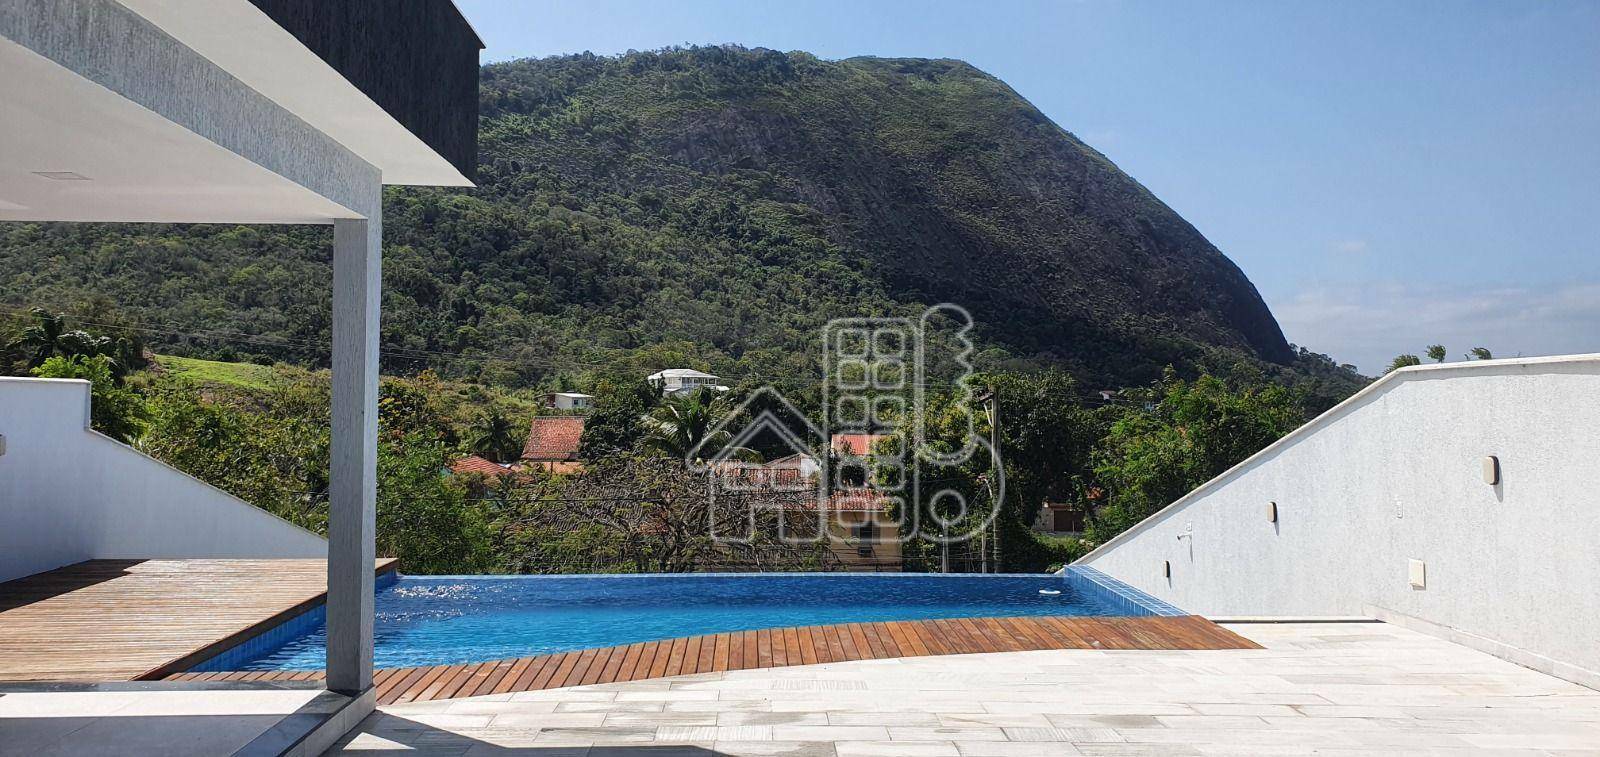 Casa com 3 dormitórios à venda, 178 m² por R$ 980.000,00 - Jardim Atlântico Oeste (Itaipuaçu) - Maricá/RJ